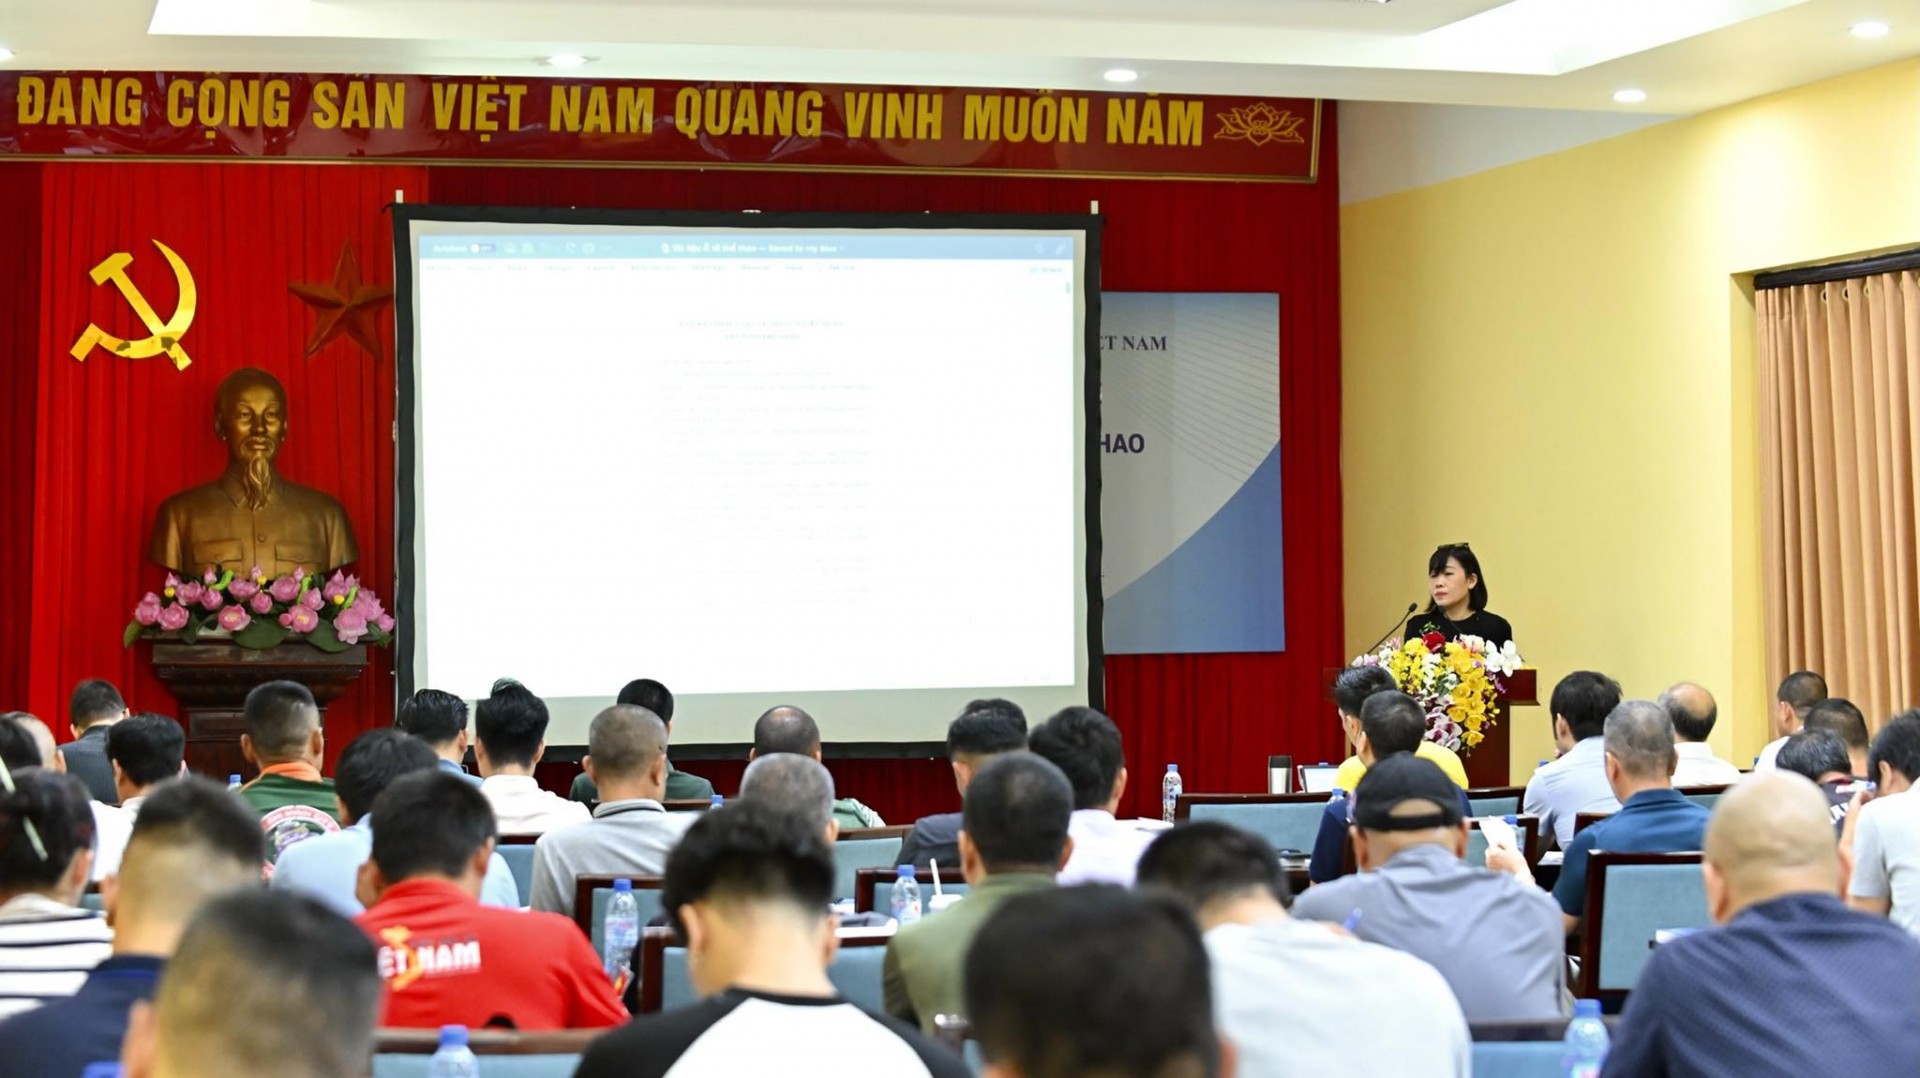 VMA tổ chức thành công khoá tập huấn trọng tài ô tô thể thao lần đầu tiên tại Việt Nam